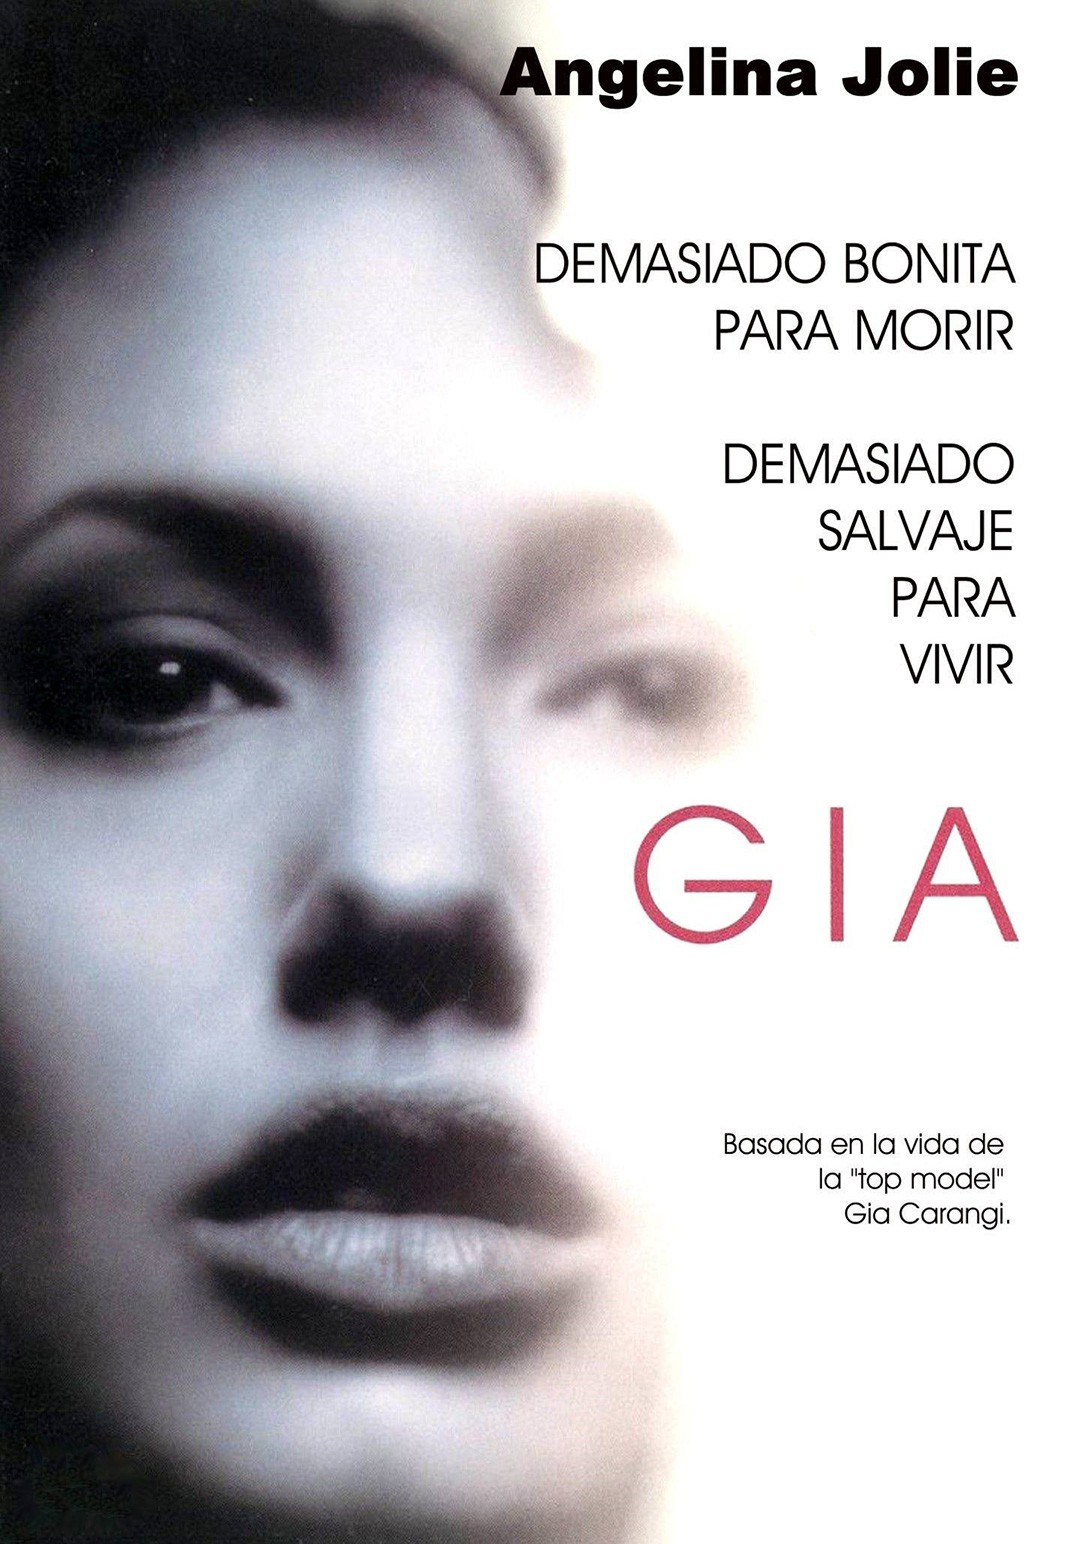 Афиша из фильма «Джиа» (Gía), 1998 г.